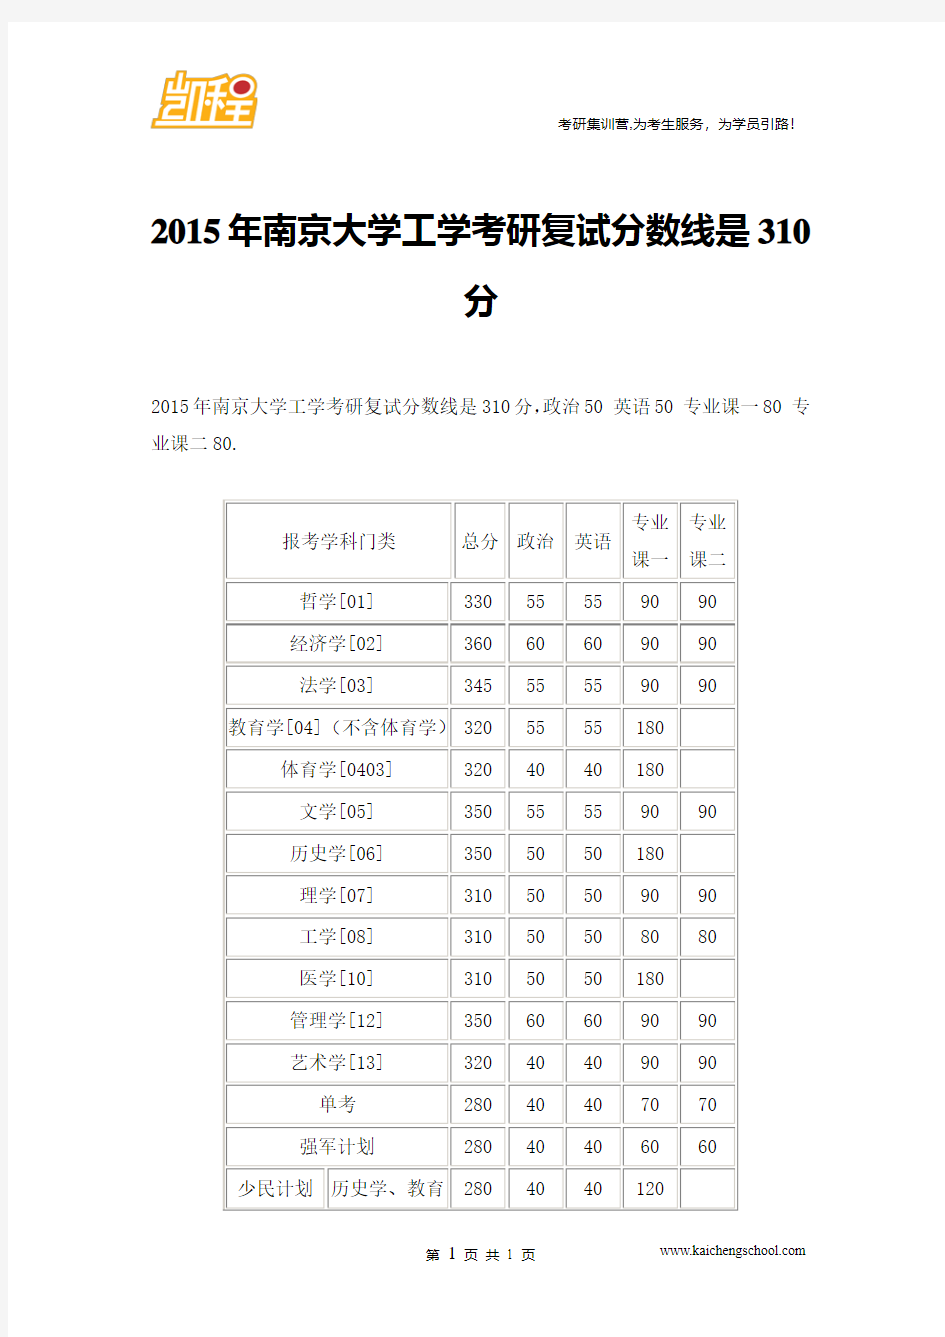 2015年南京大学工学考研复试分数线是310分